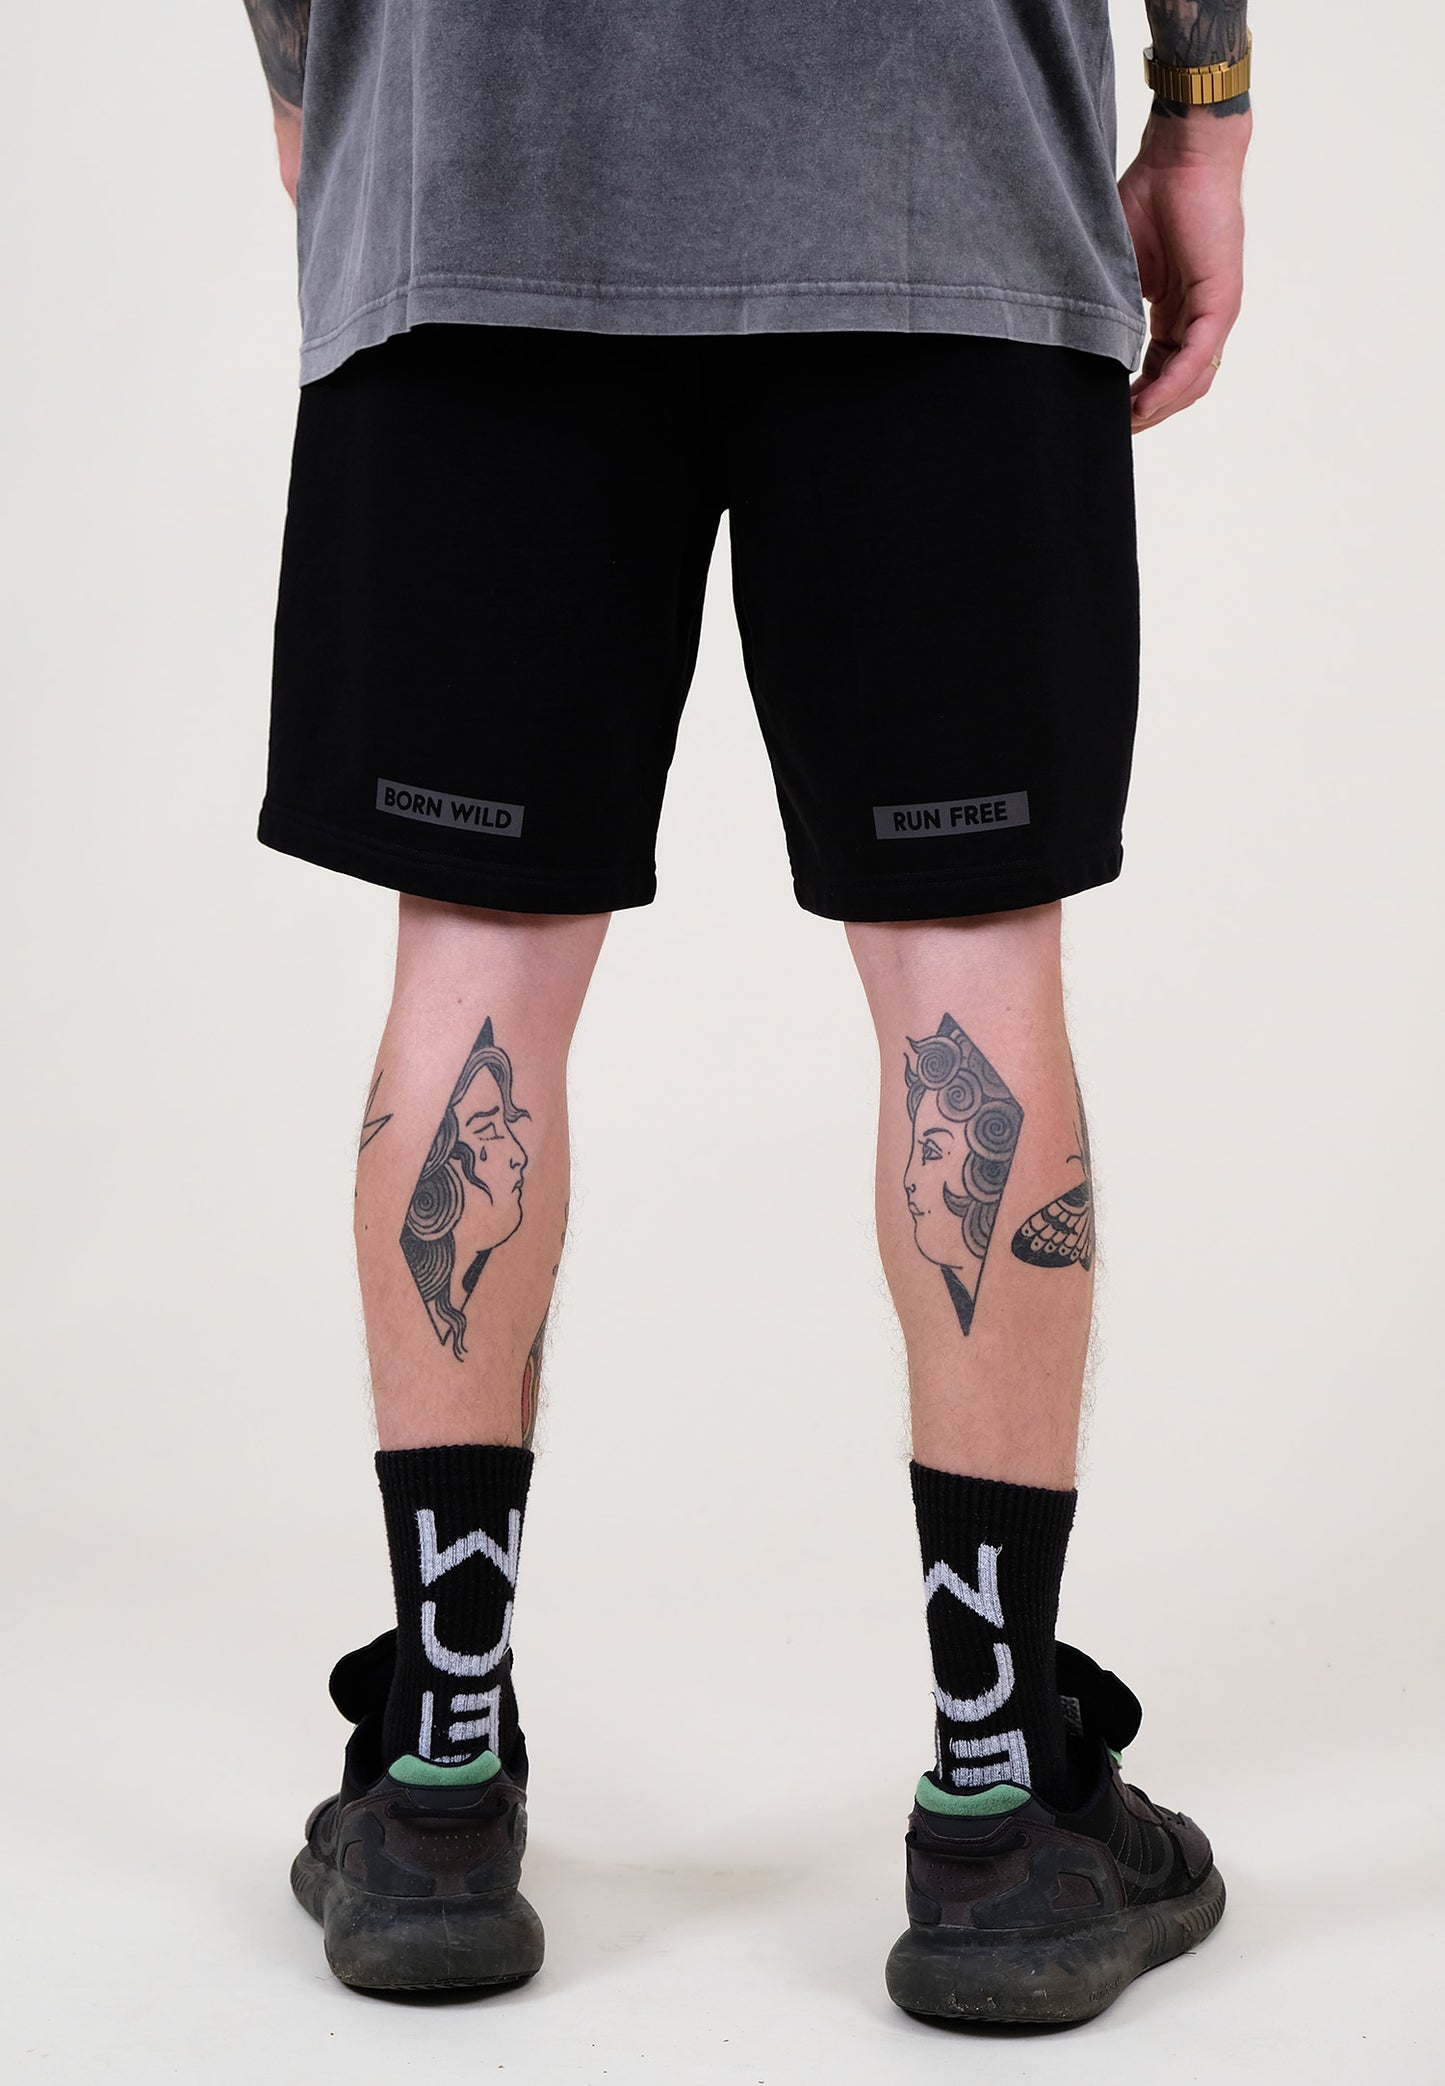 65°122 Shorts, Black reflector